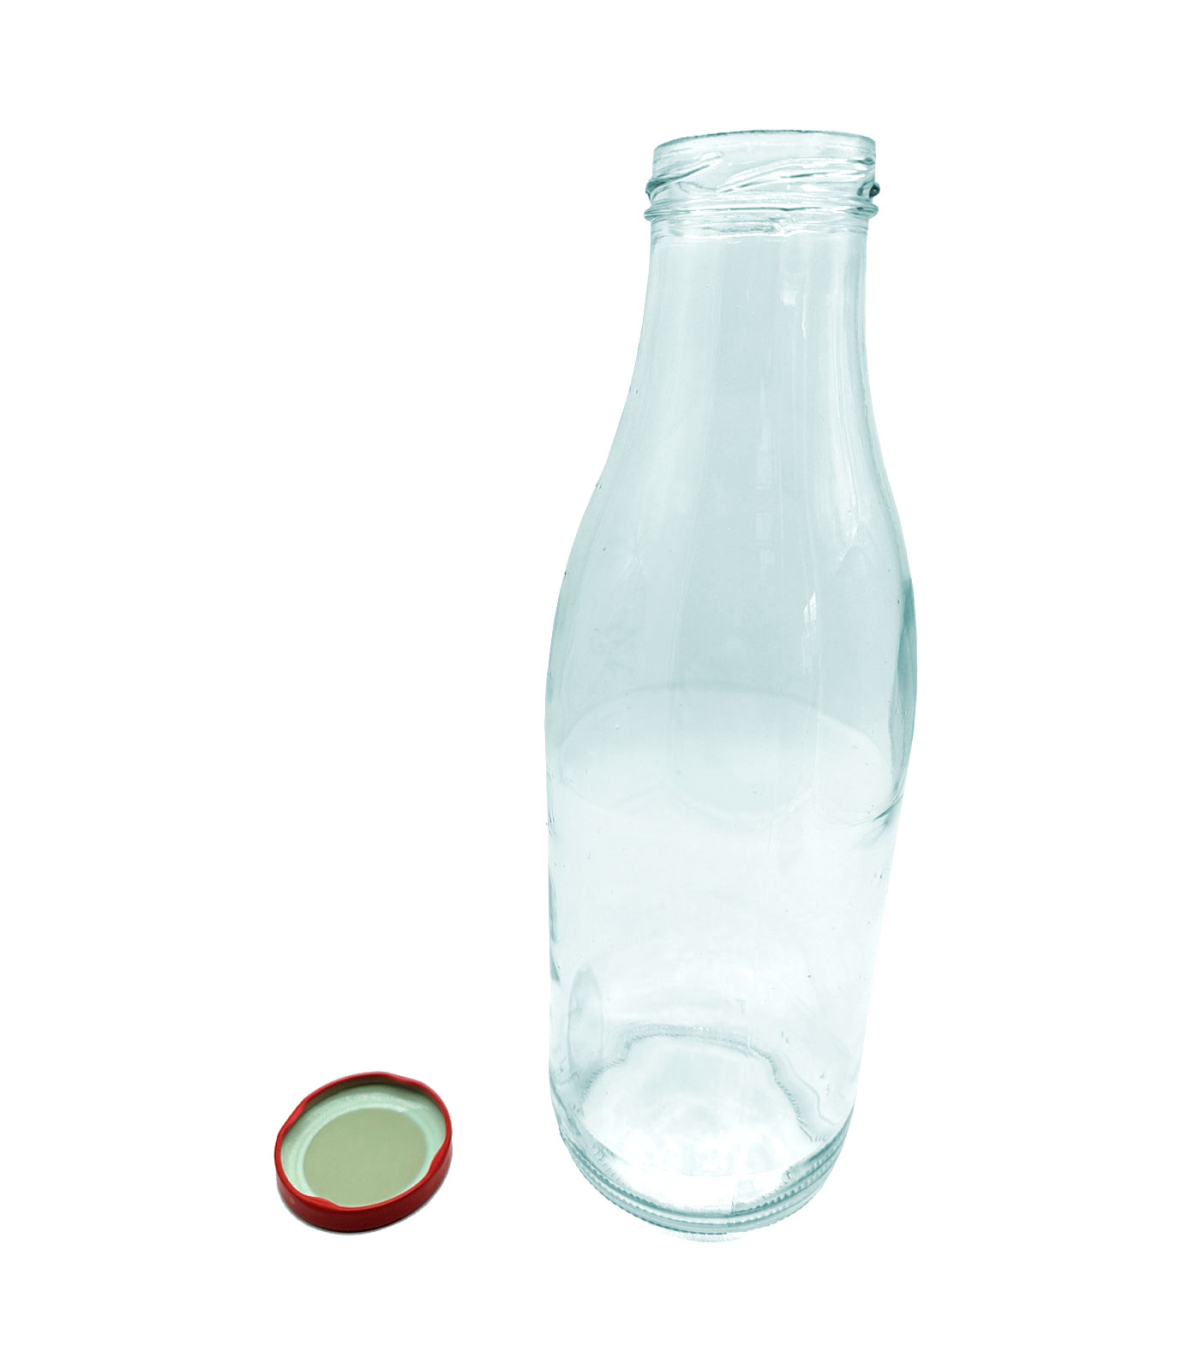  Botellas de leche de vidrio de un litro con tapa de